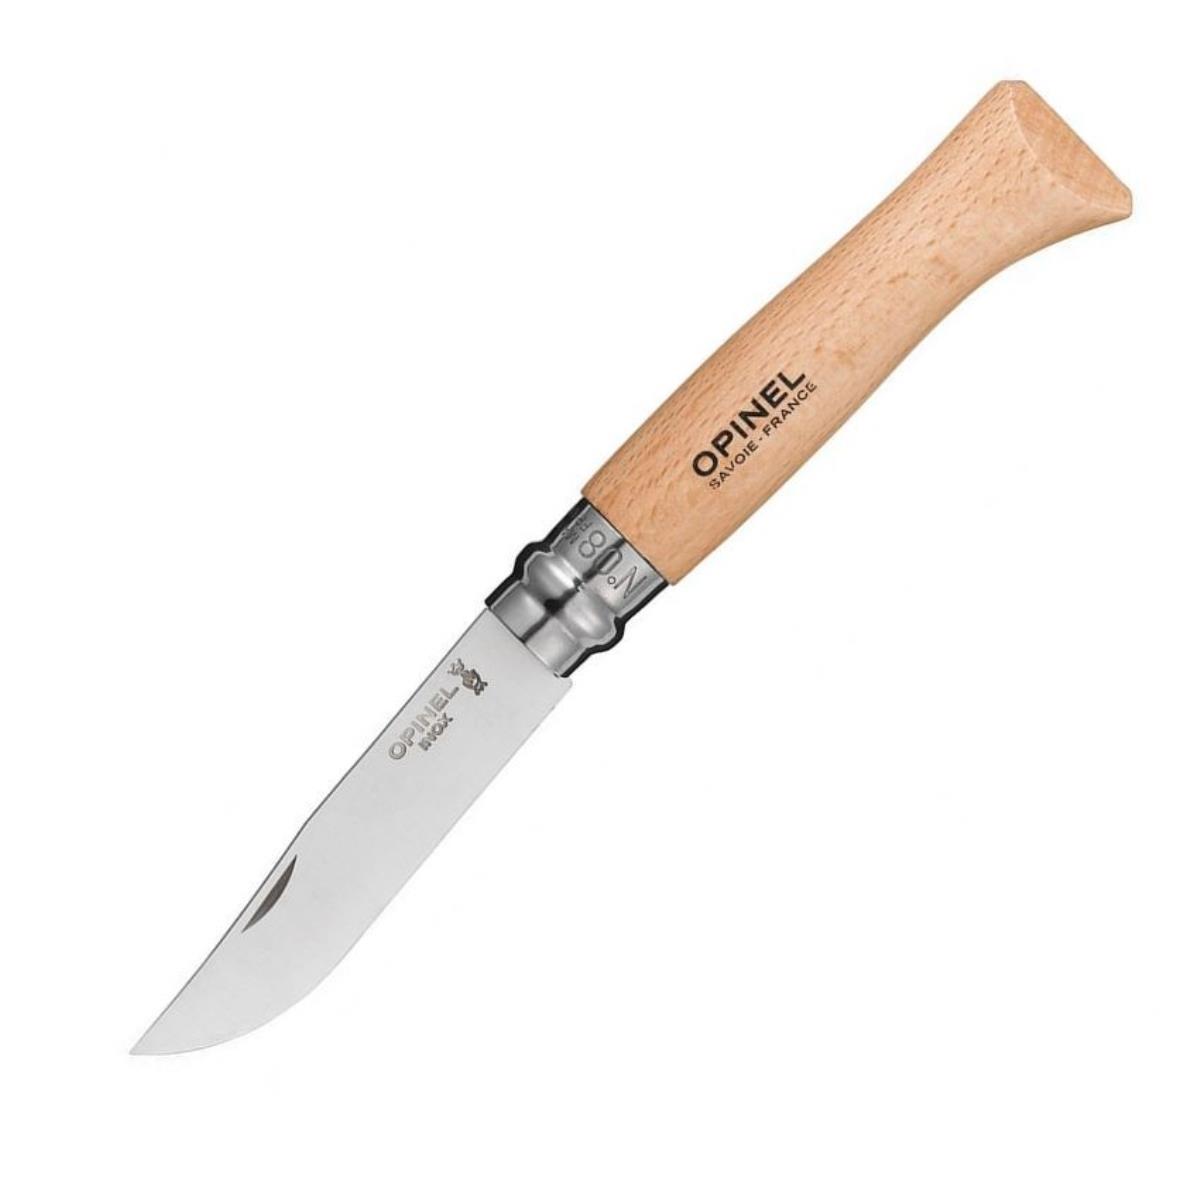 Нож №8 VRI Tradition Inox (нерж.сталь, рукоять бук, длина клинка 8,5 см) 1230805 OPINEL складной нож boker sherman damast сталь дамаск рукоять микарта